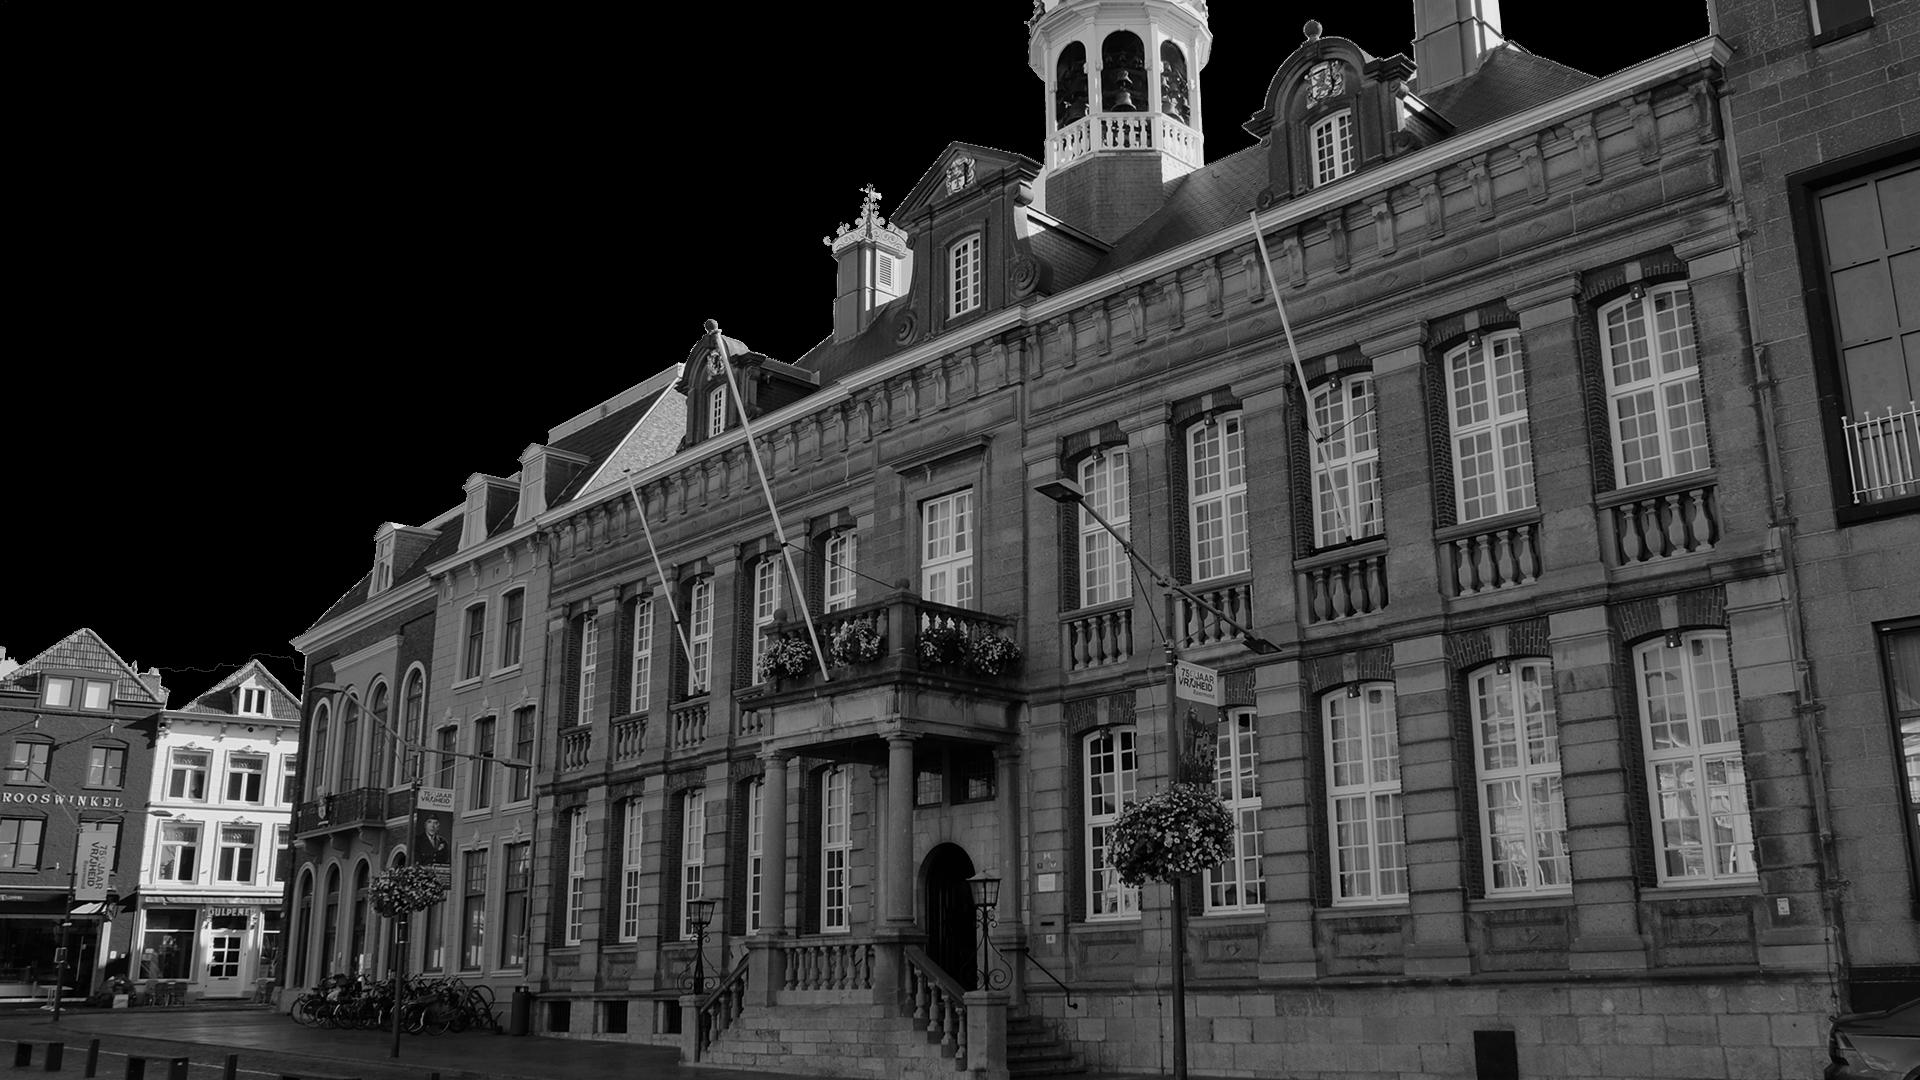 Stadhuis Roermond, in zwartwit afgebeeld